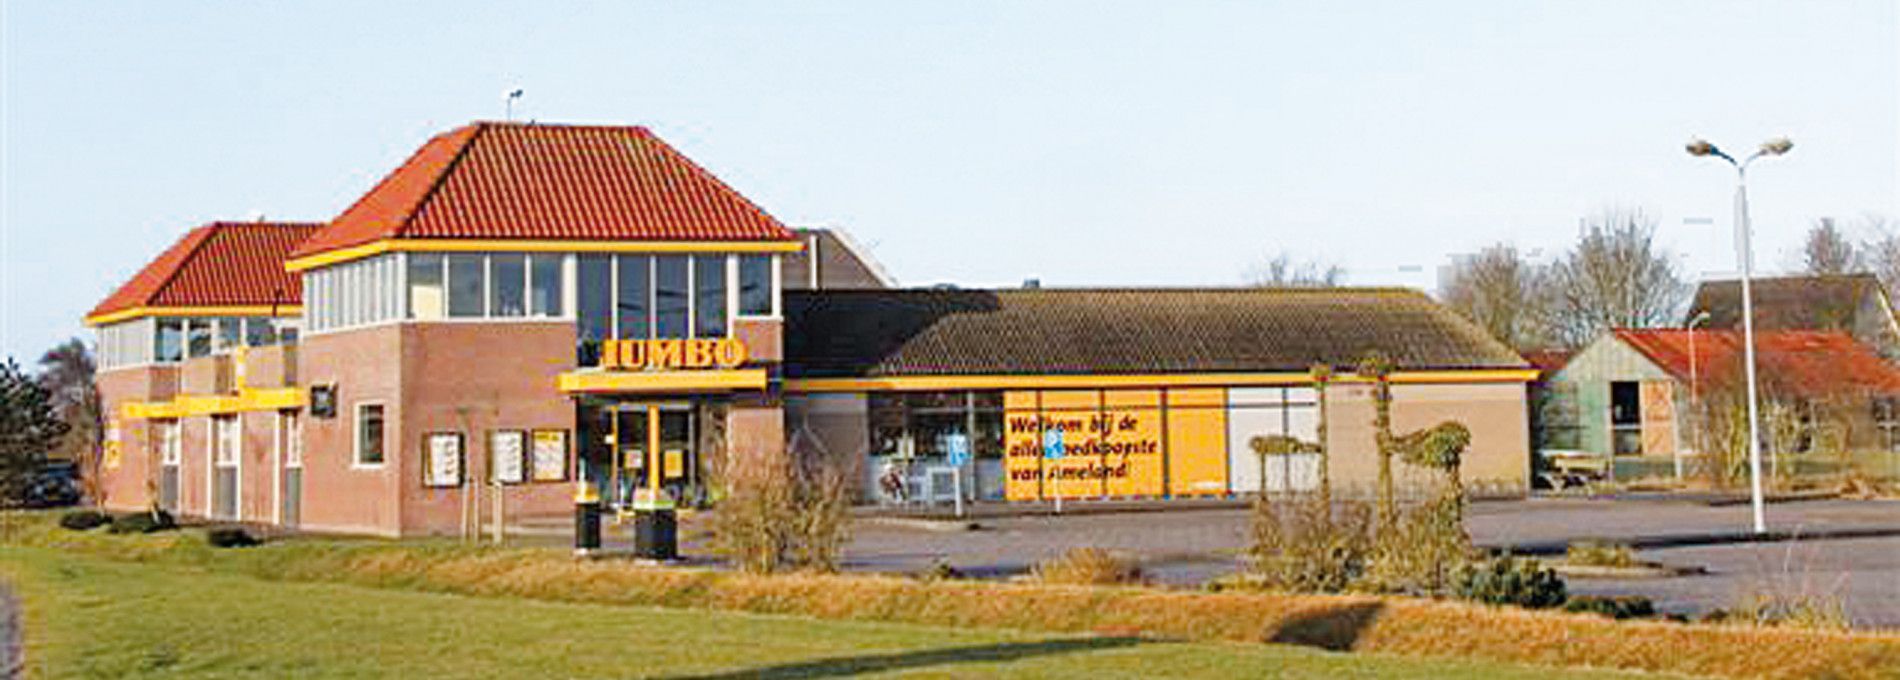 Jumbo Supermarkt - VVV Ameland